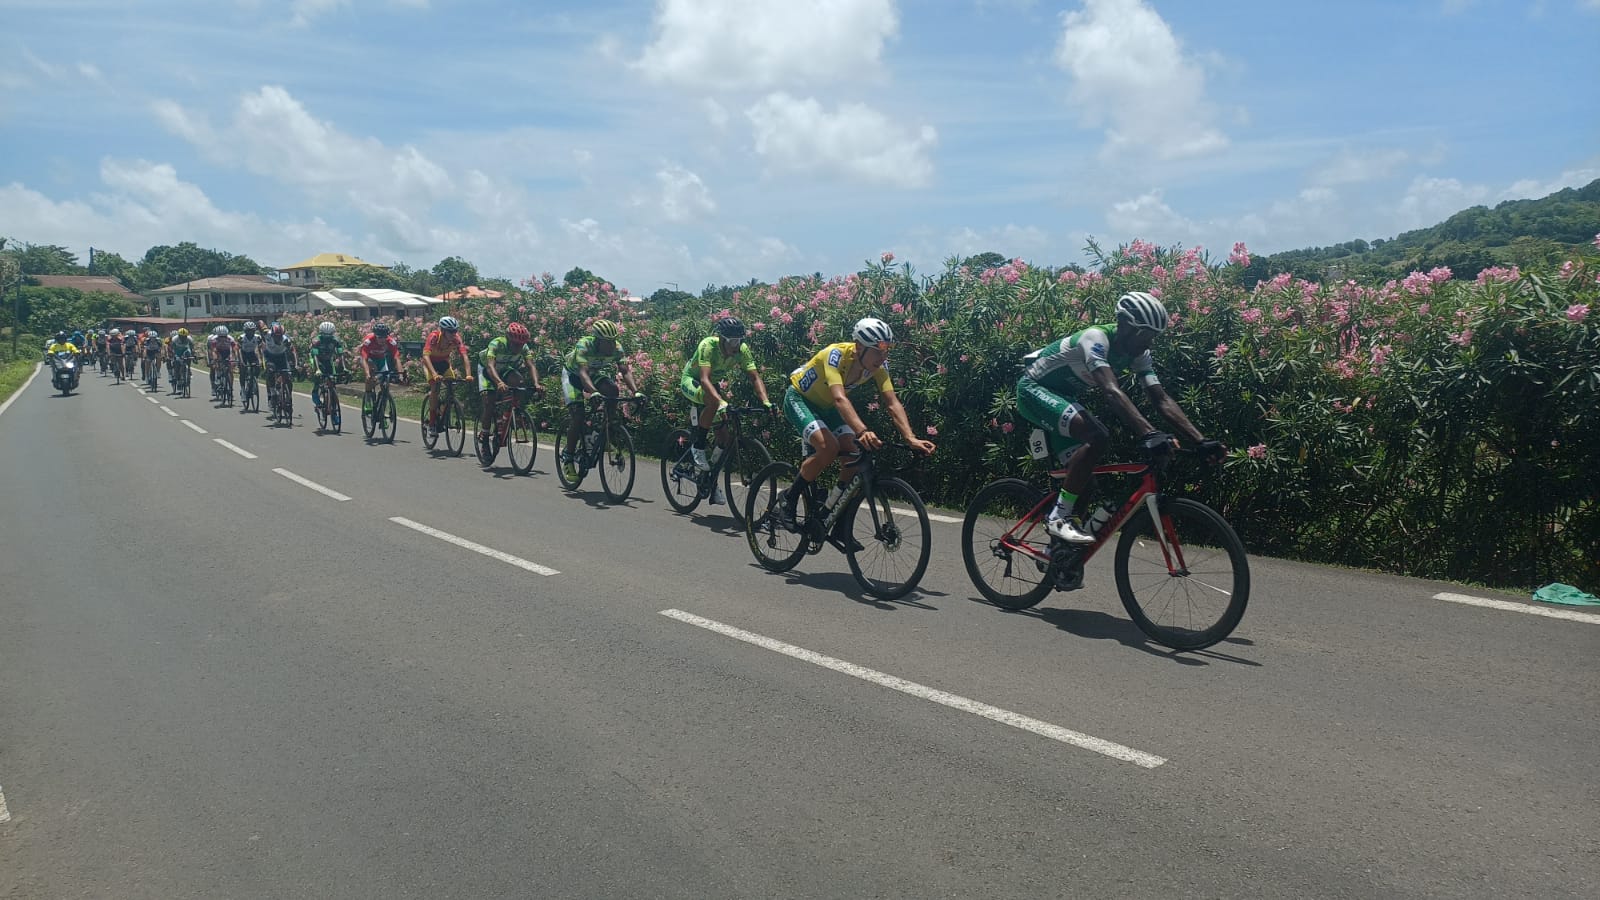     1ère étape du Tour cycliste de Martinique : une double boucle dans le Sud pour commencer

